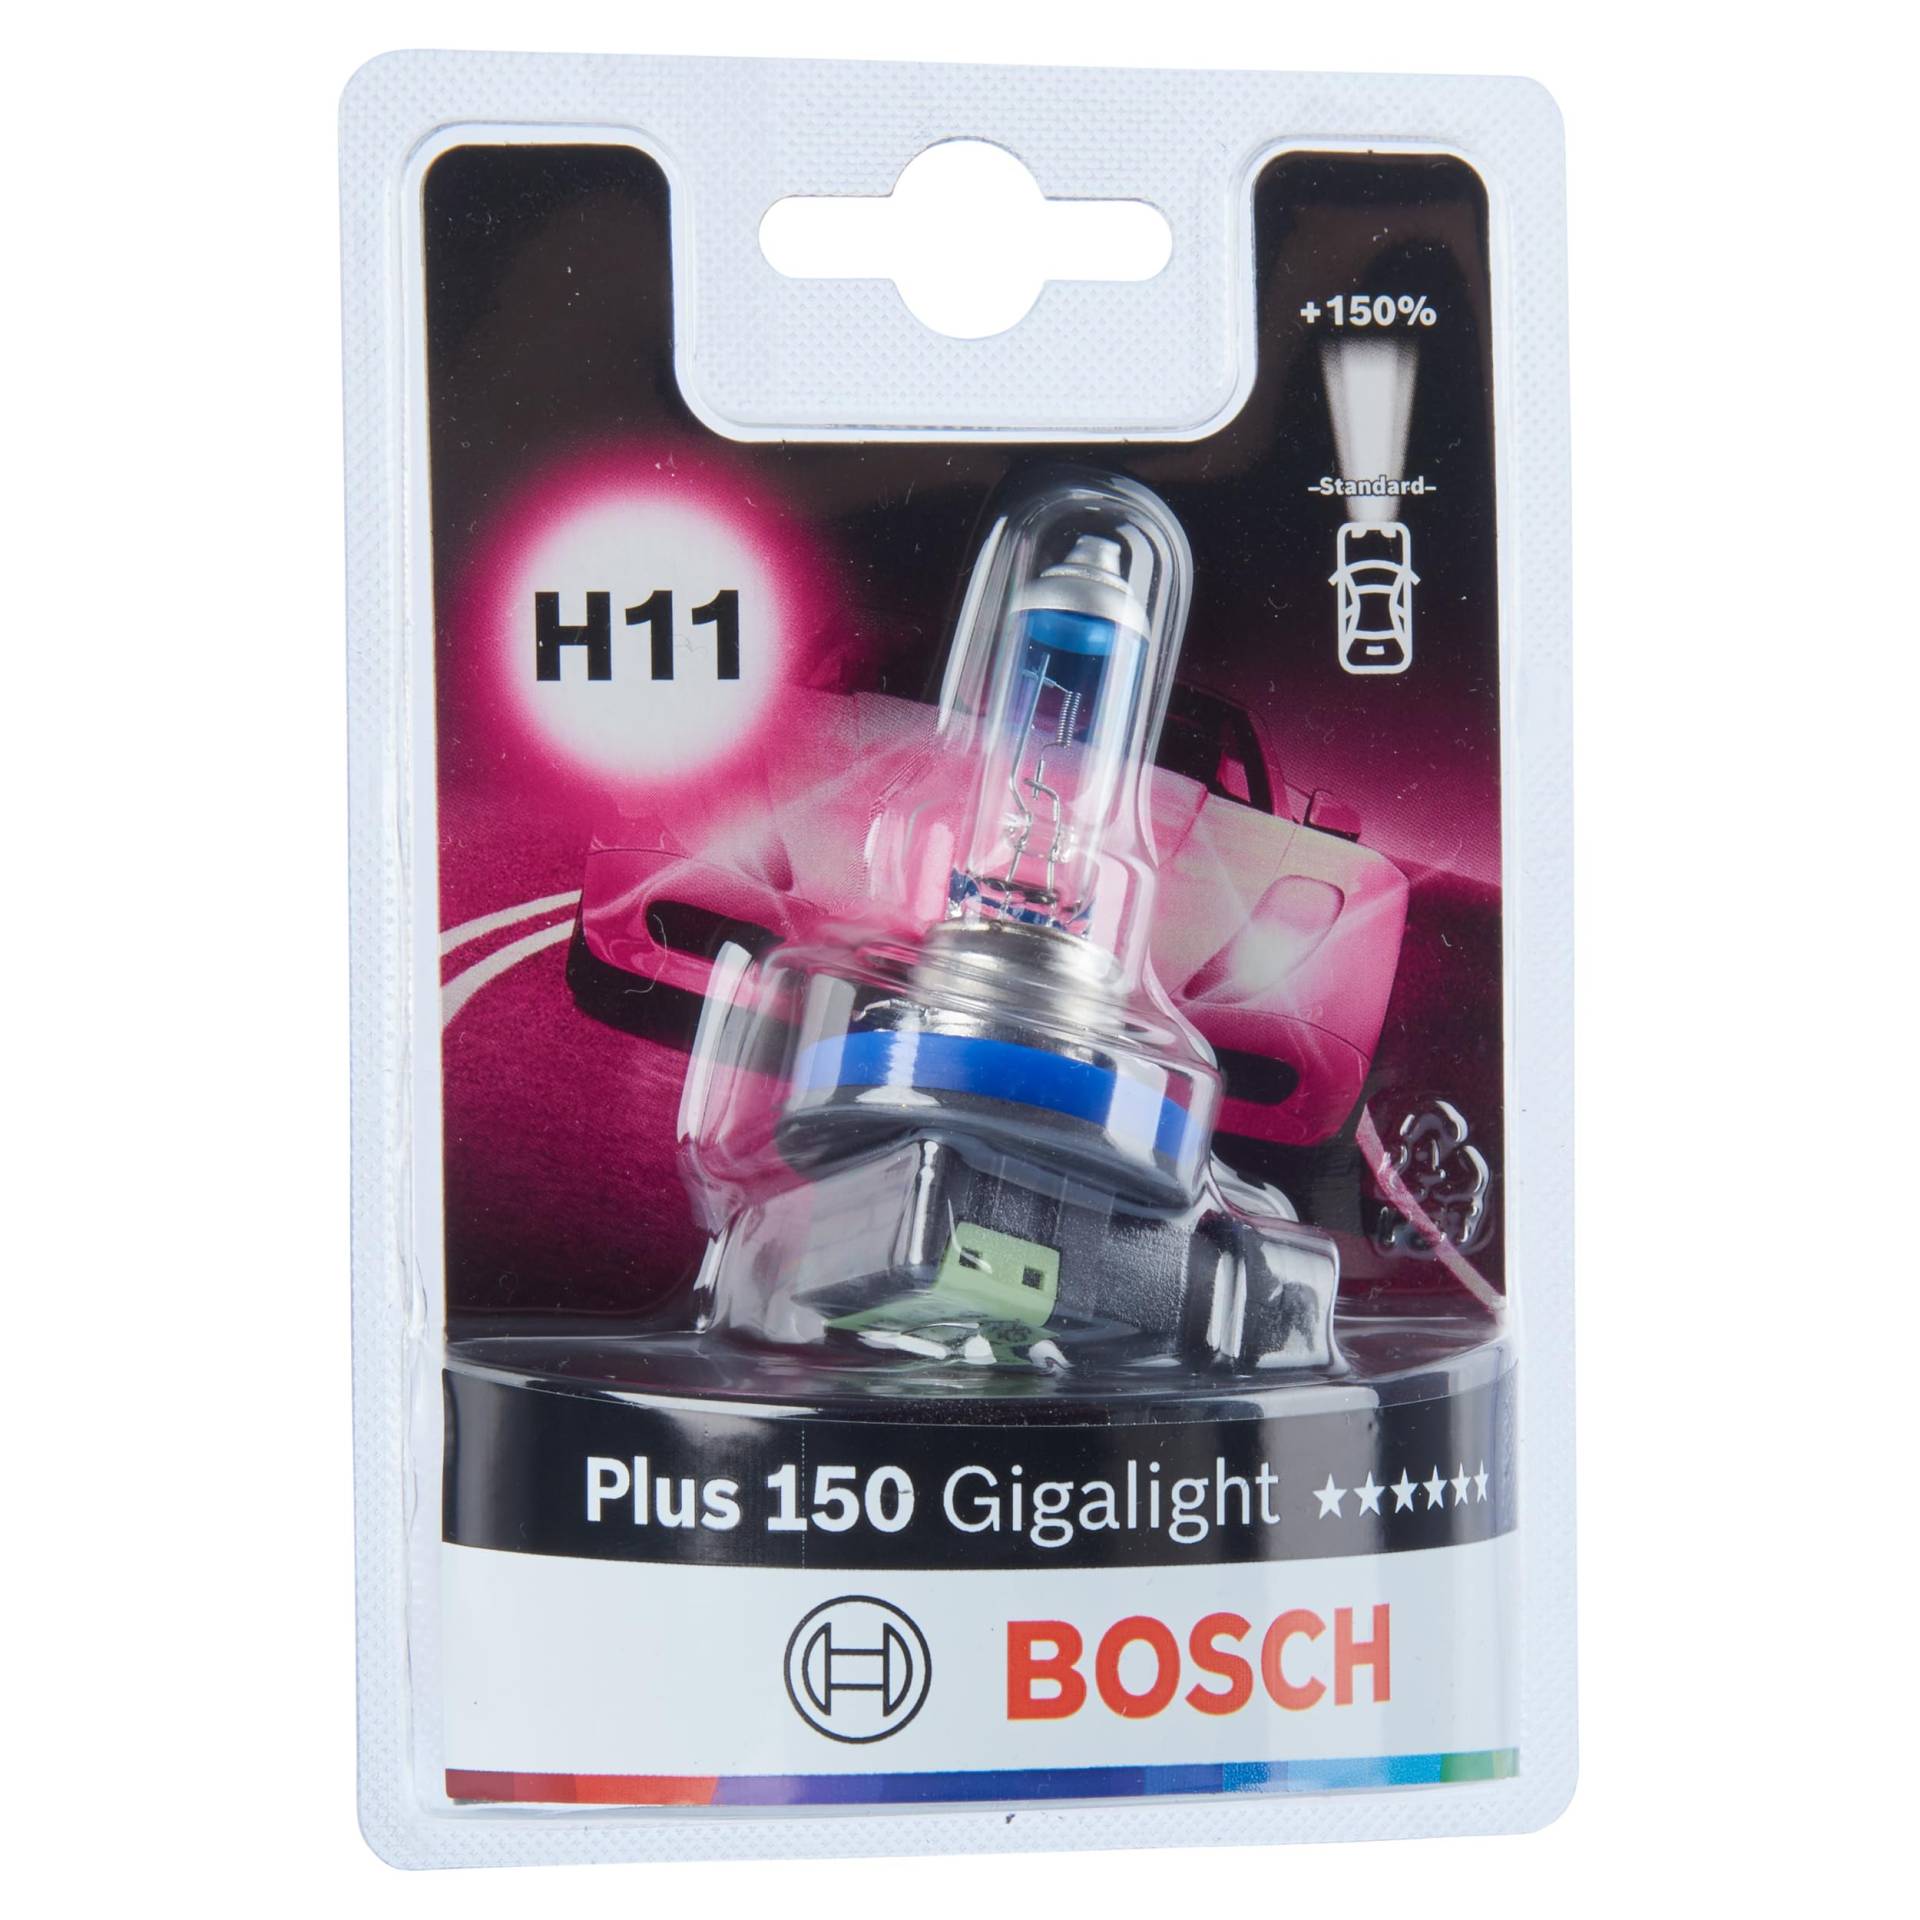 Bosch H11 Plus 150 Gigalight Lampe - 12 V 55 W PGJ19-2 - 1 Stück von Bosch